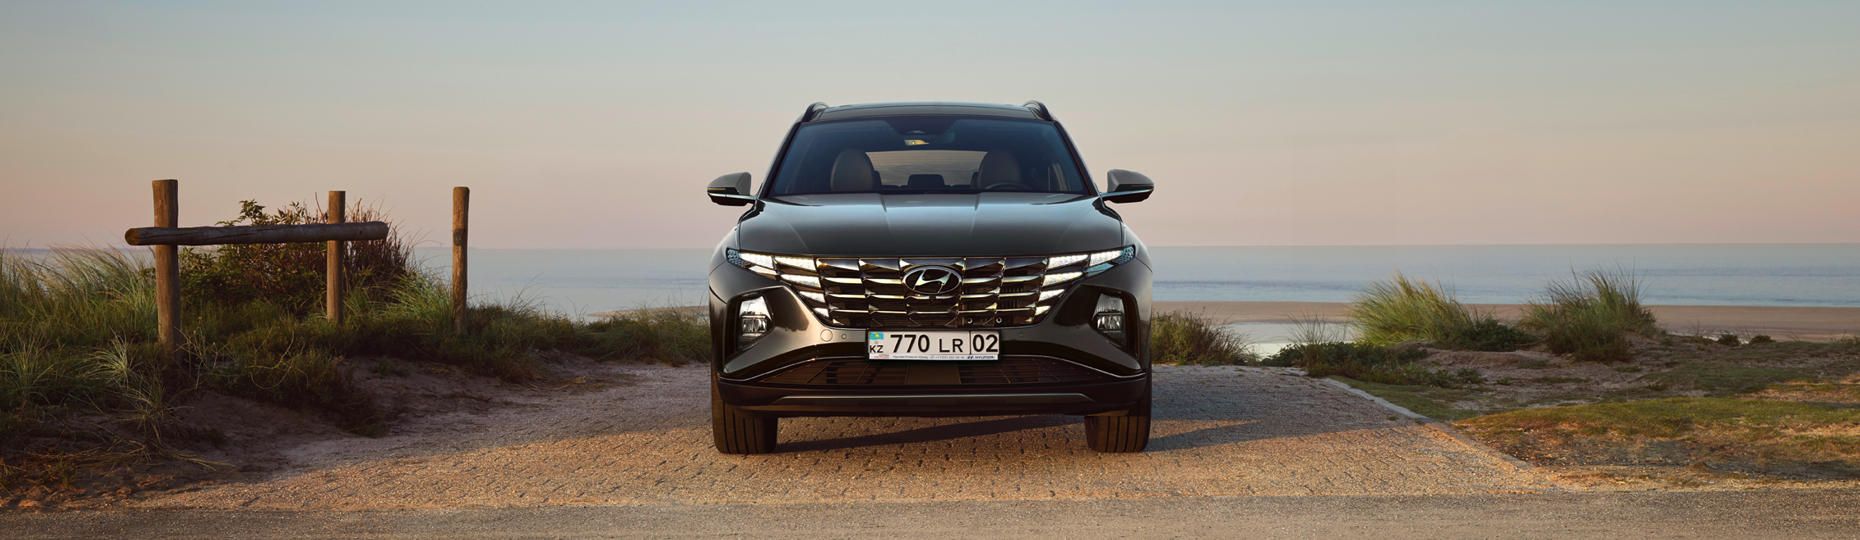 Цена и комплектации нового Hyundai Tucson в Алматы